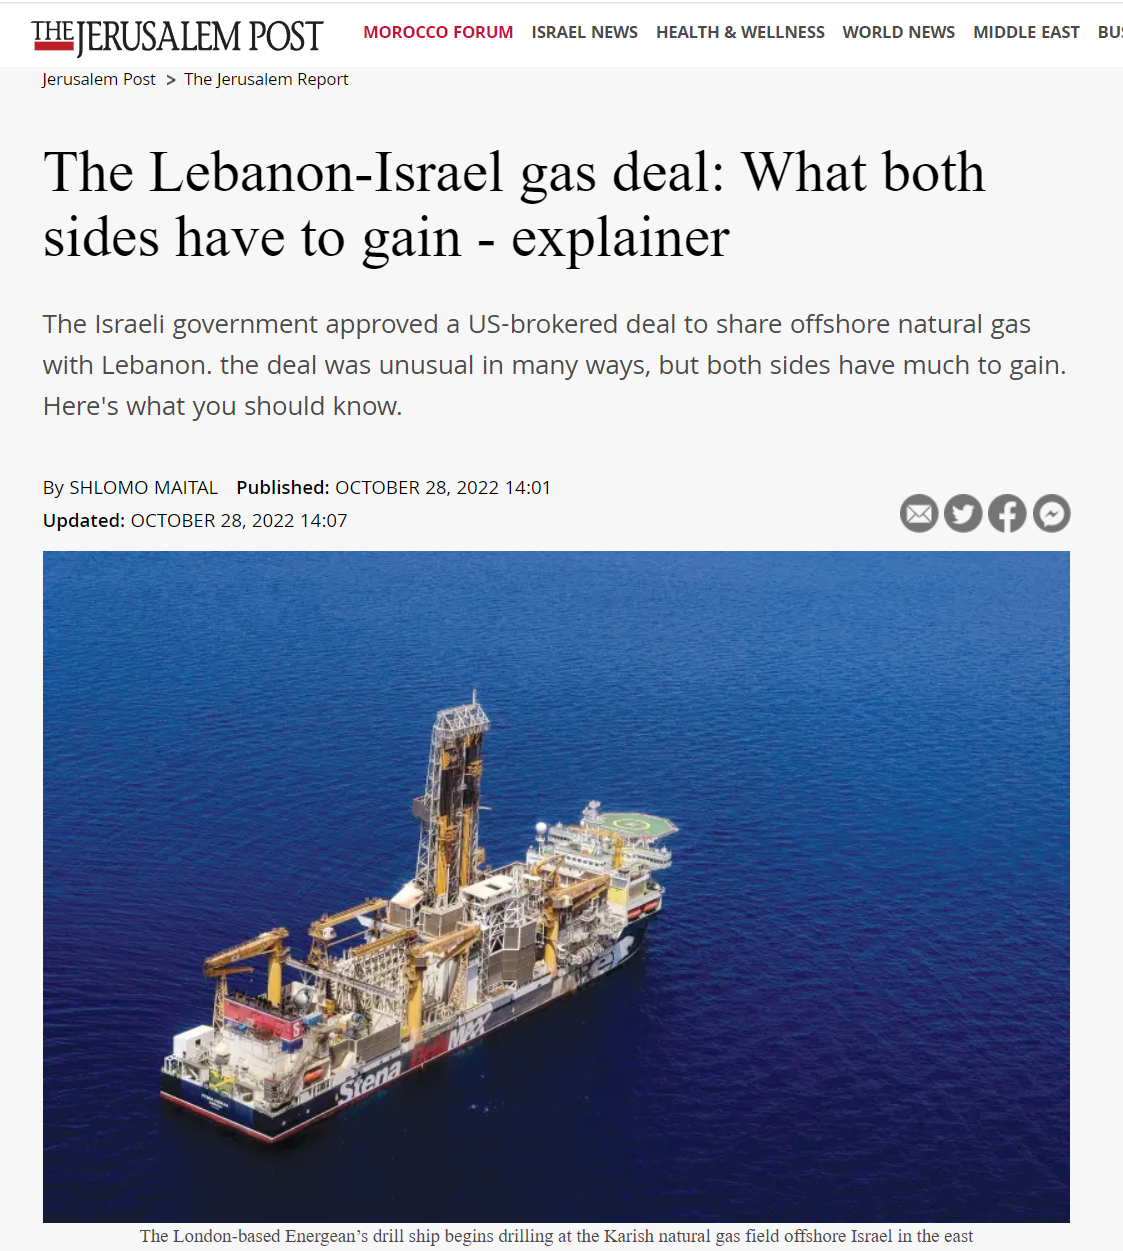 עסקת הגז לבנון-ישראל: מה יש לשני הצדדים להרוויח - הסבר